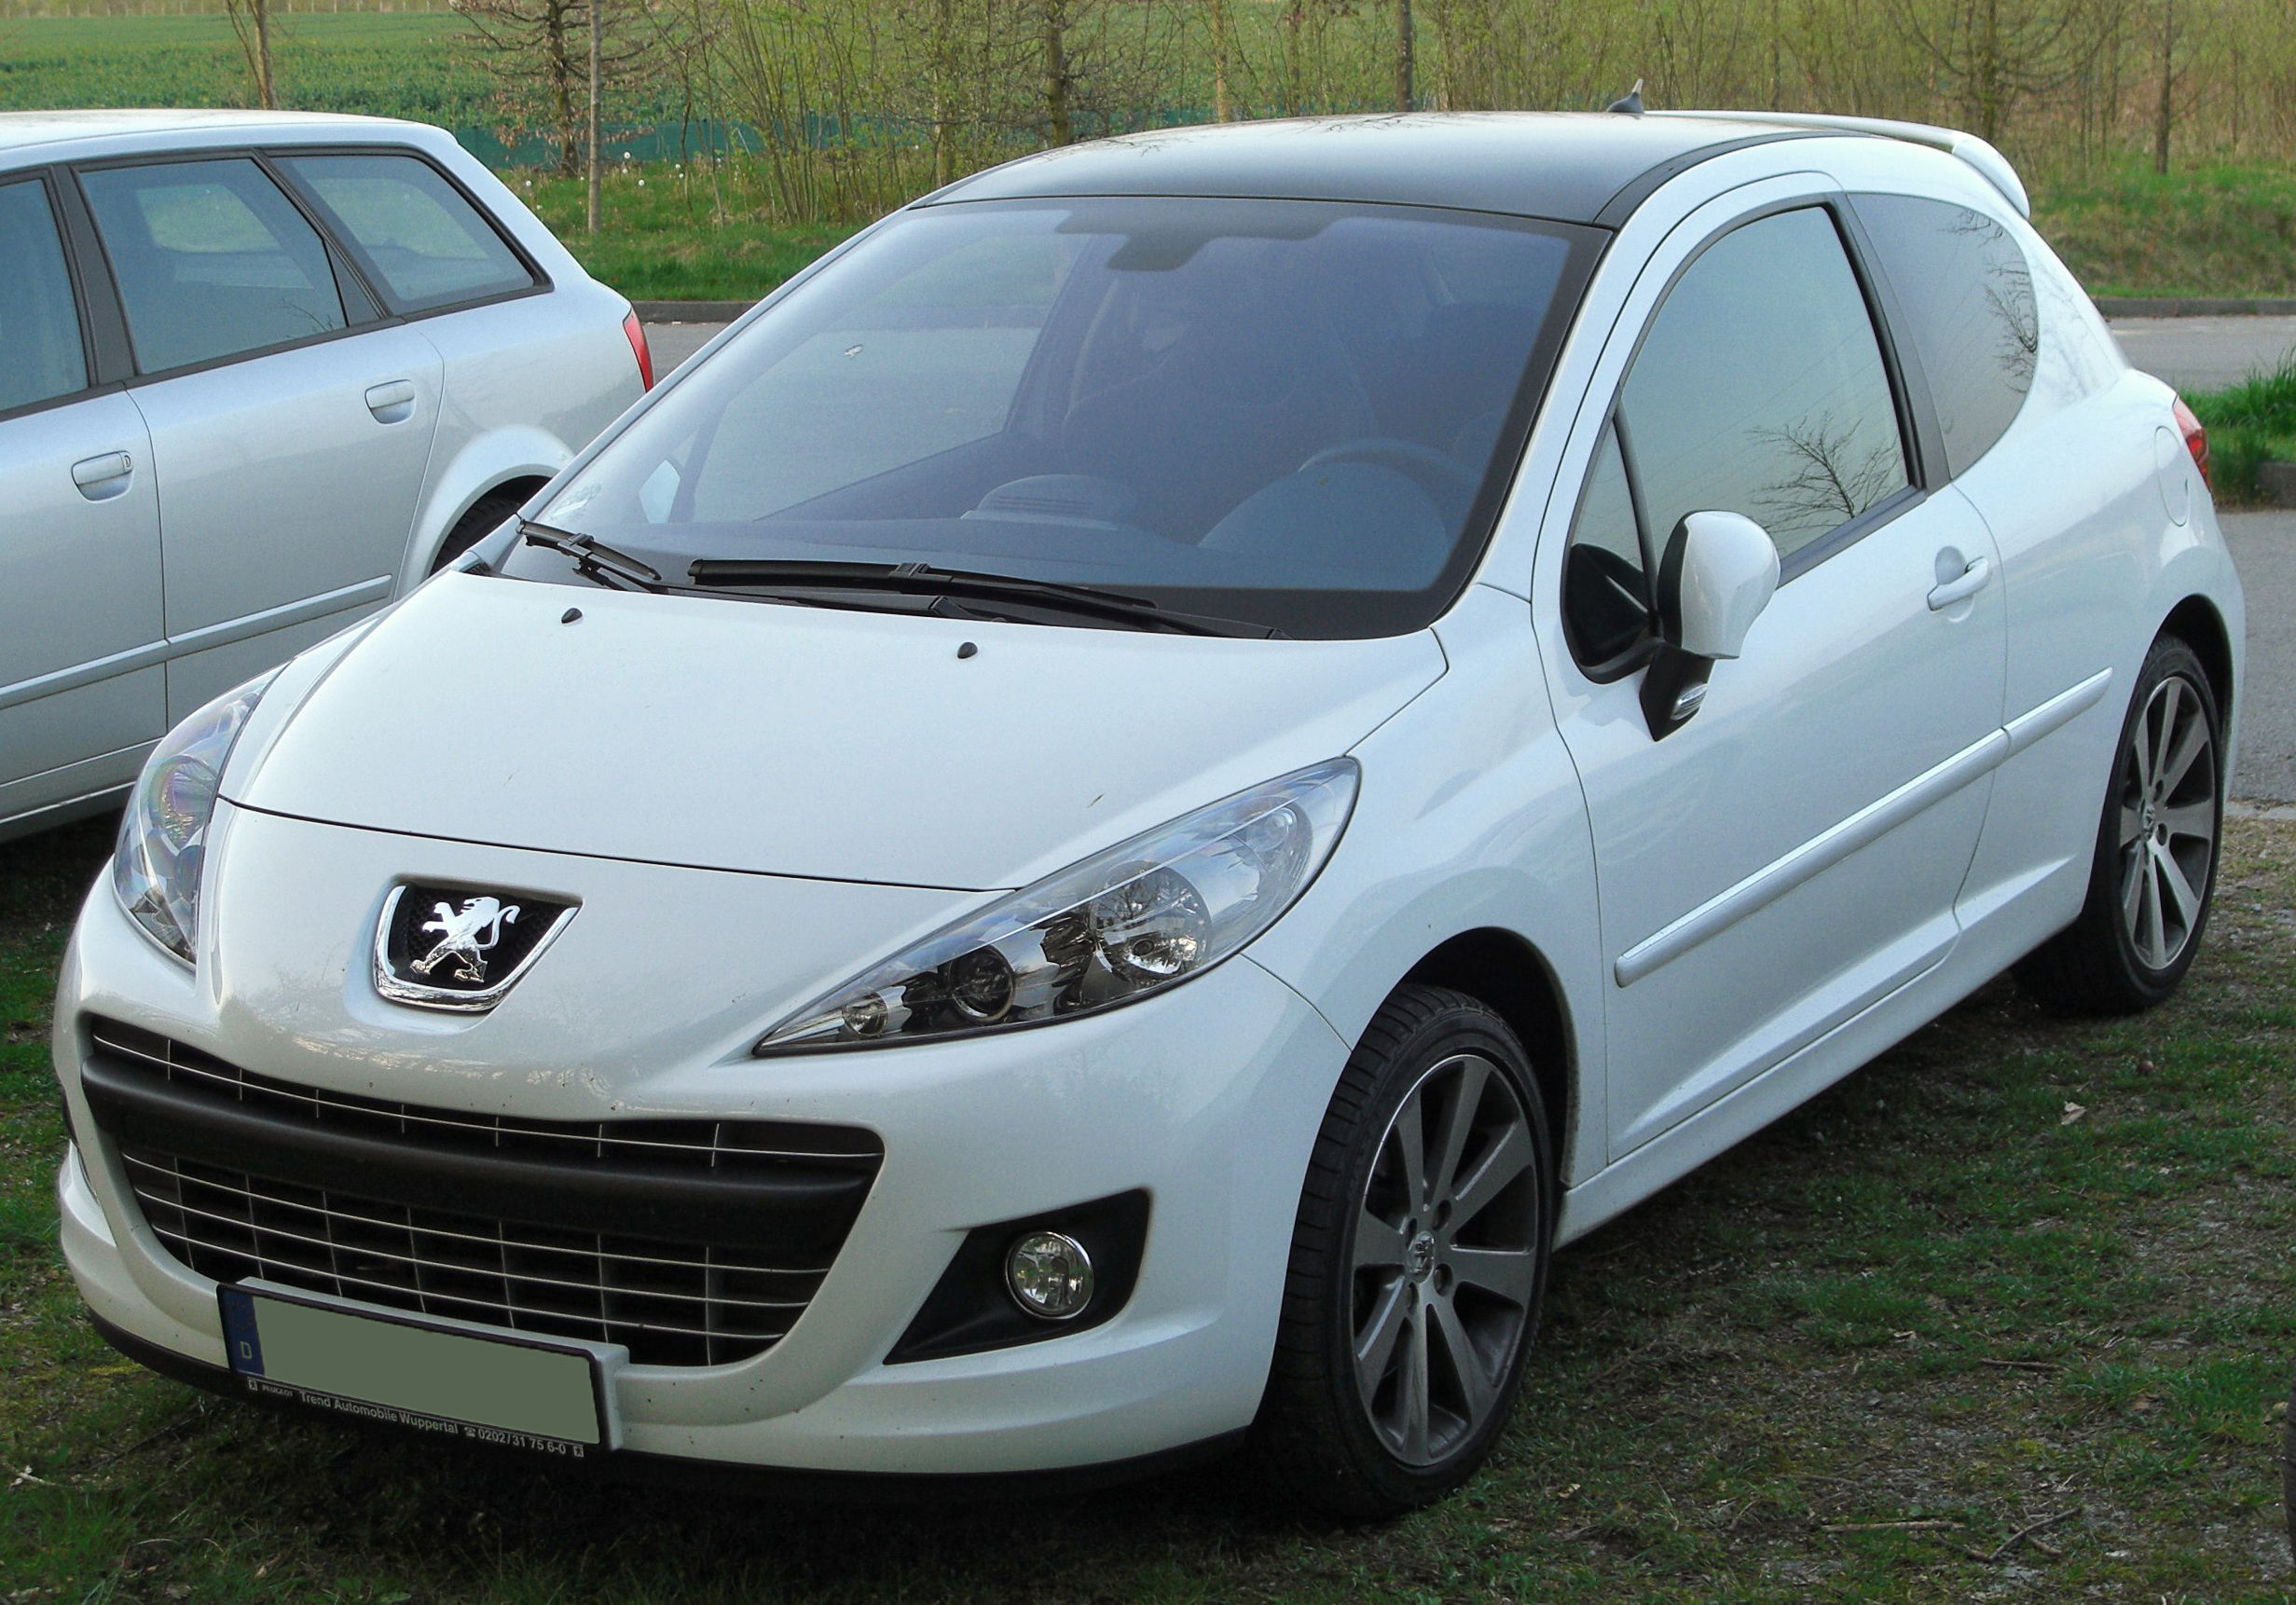 File:Peugeot 207 RC Facelift front 20100416.jpg